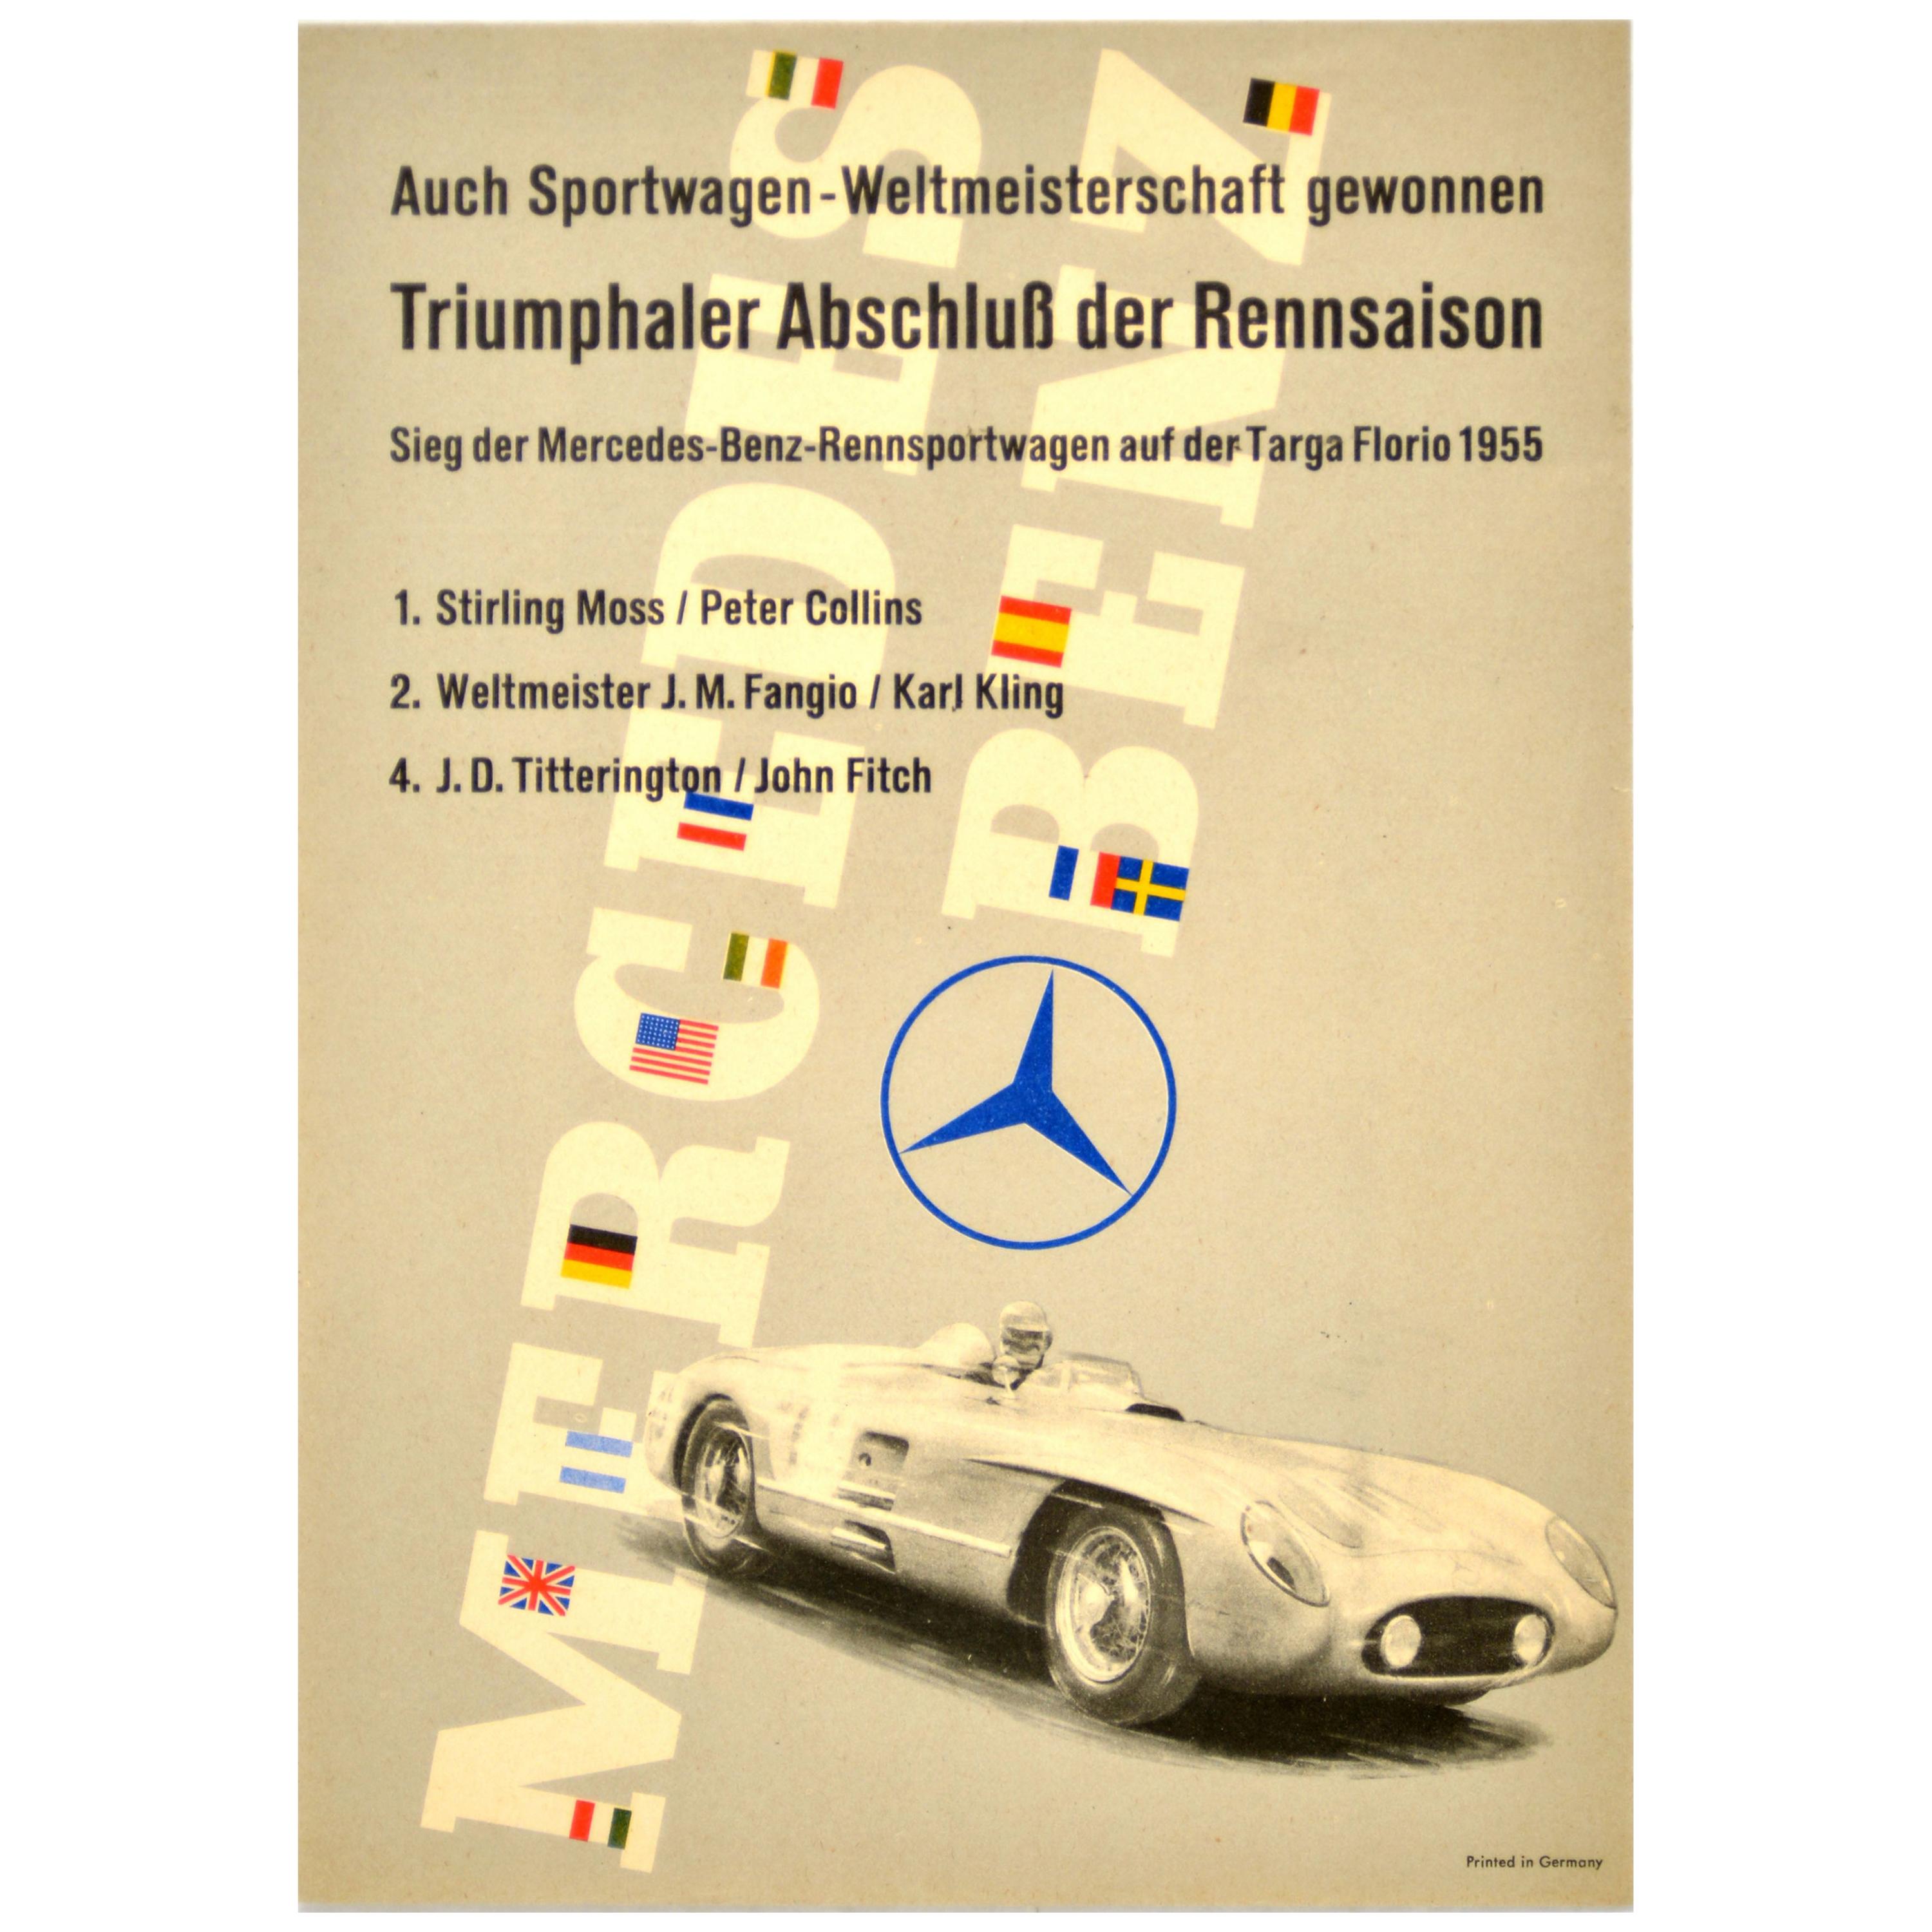 1954 Mercedes Grossen Preis Von Frankreich vintage racing re-print poster 